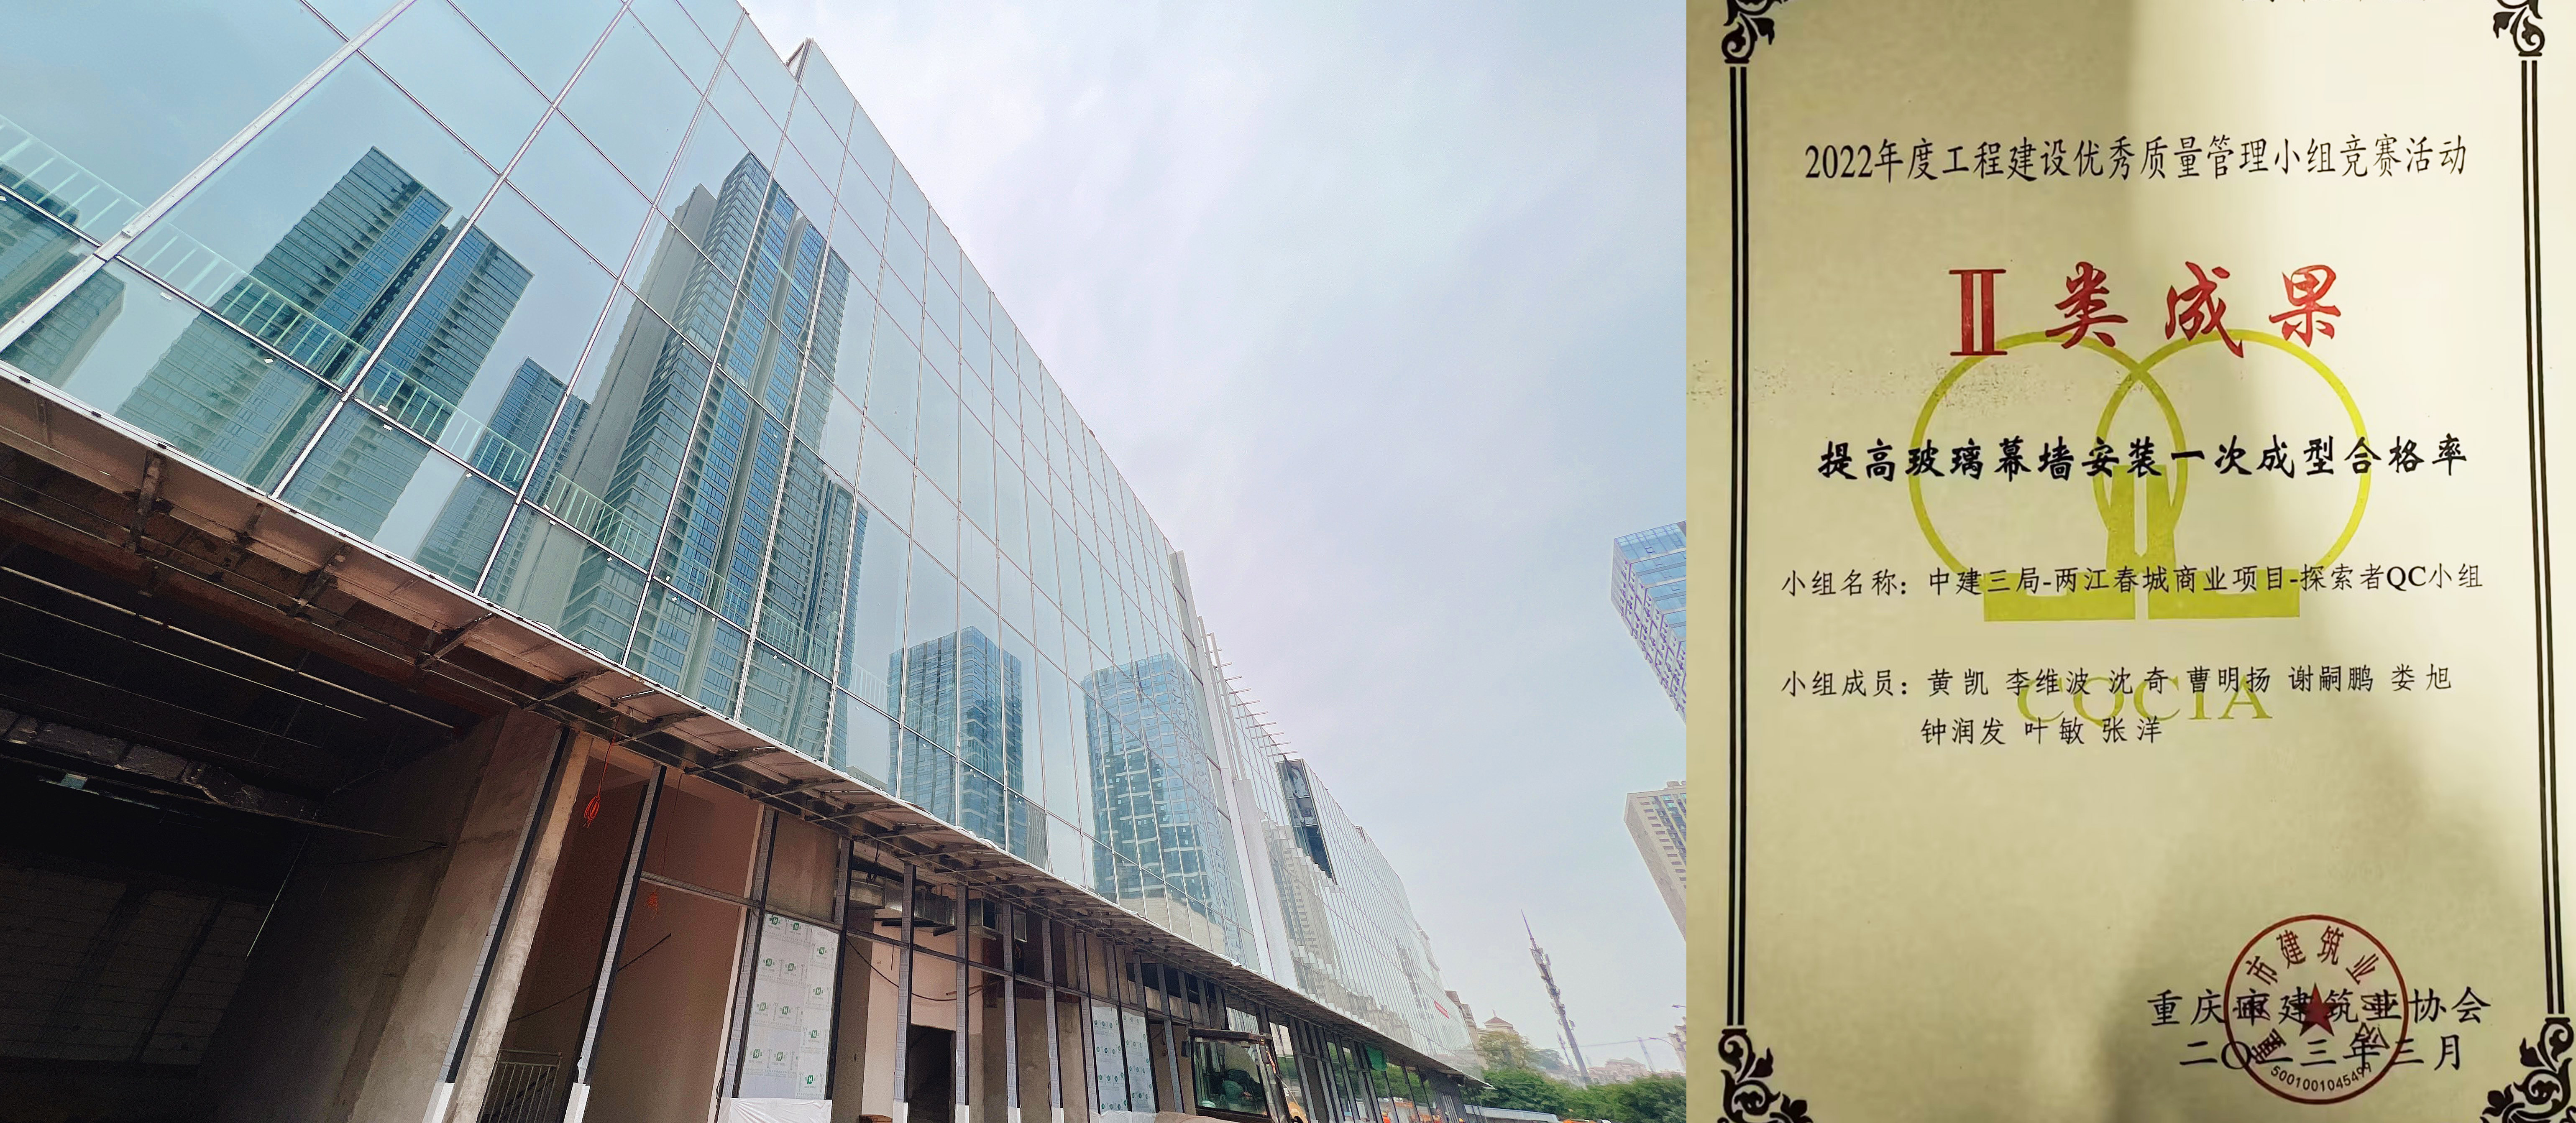 幕墙分公司重庆两江春城商业项目荣获“重庆市2022年度QC小组竞赛”成果奖